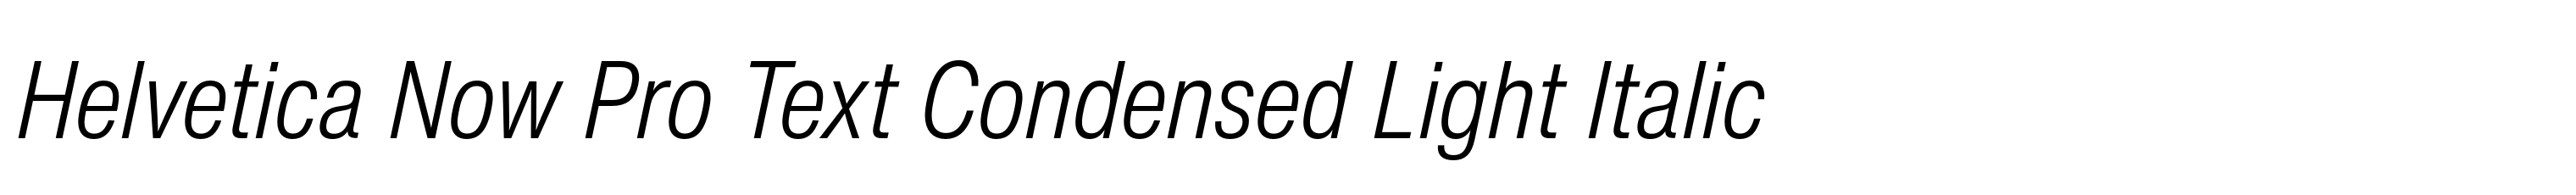 Helvetica Now Pro Text Condensed Light Italic